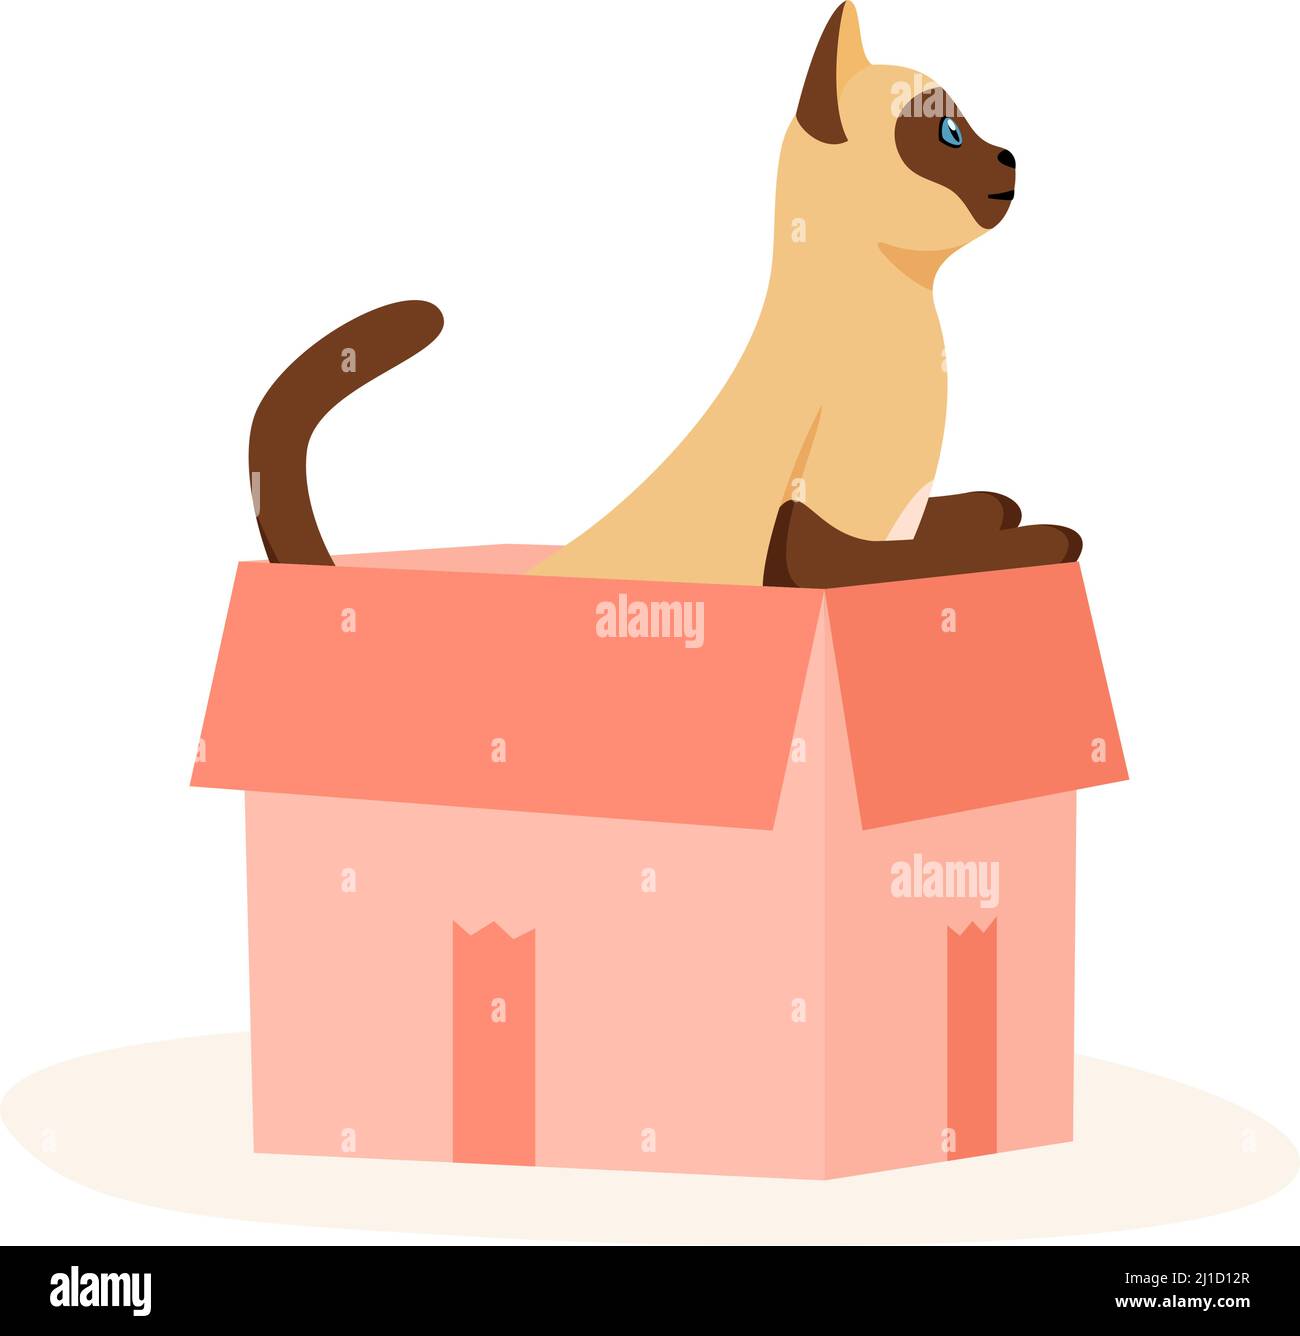 Siamkatze sitzt in der Box. Niedliches Haustier spielt in einem Papierkoffer. Versteck- und Ruheplatz für flauschigen Untertaufer. Vektor mit flachem Stil Stock Vektor